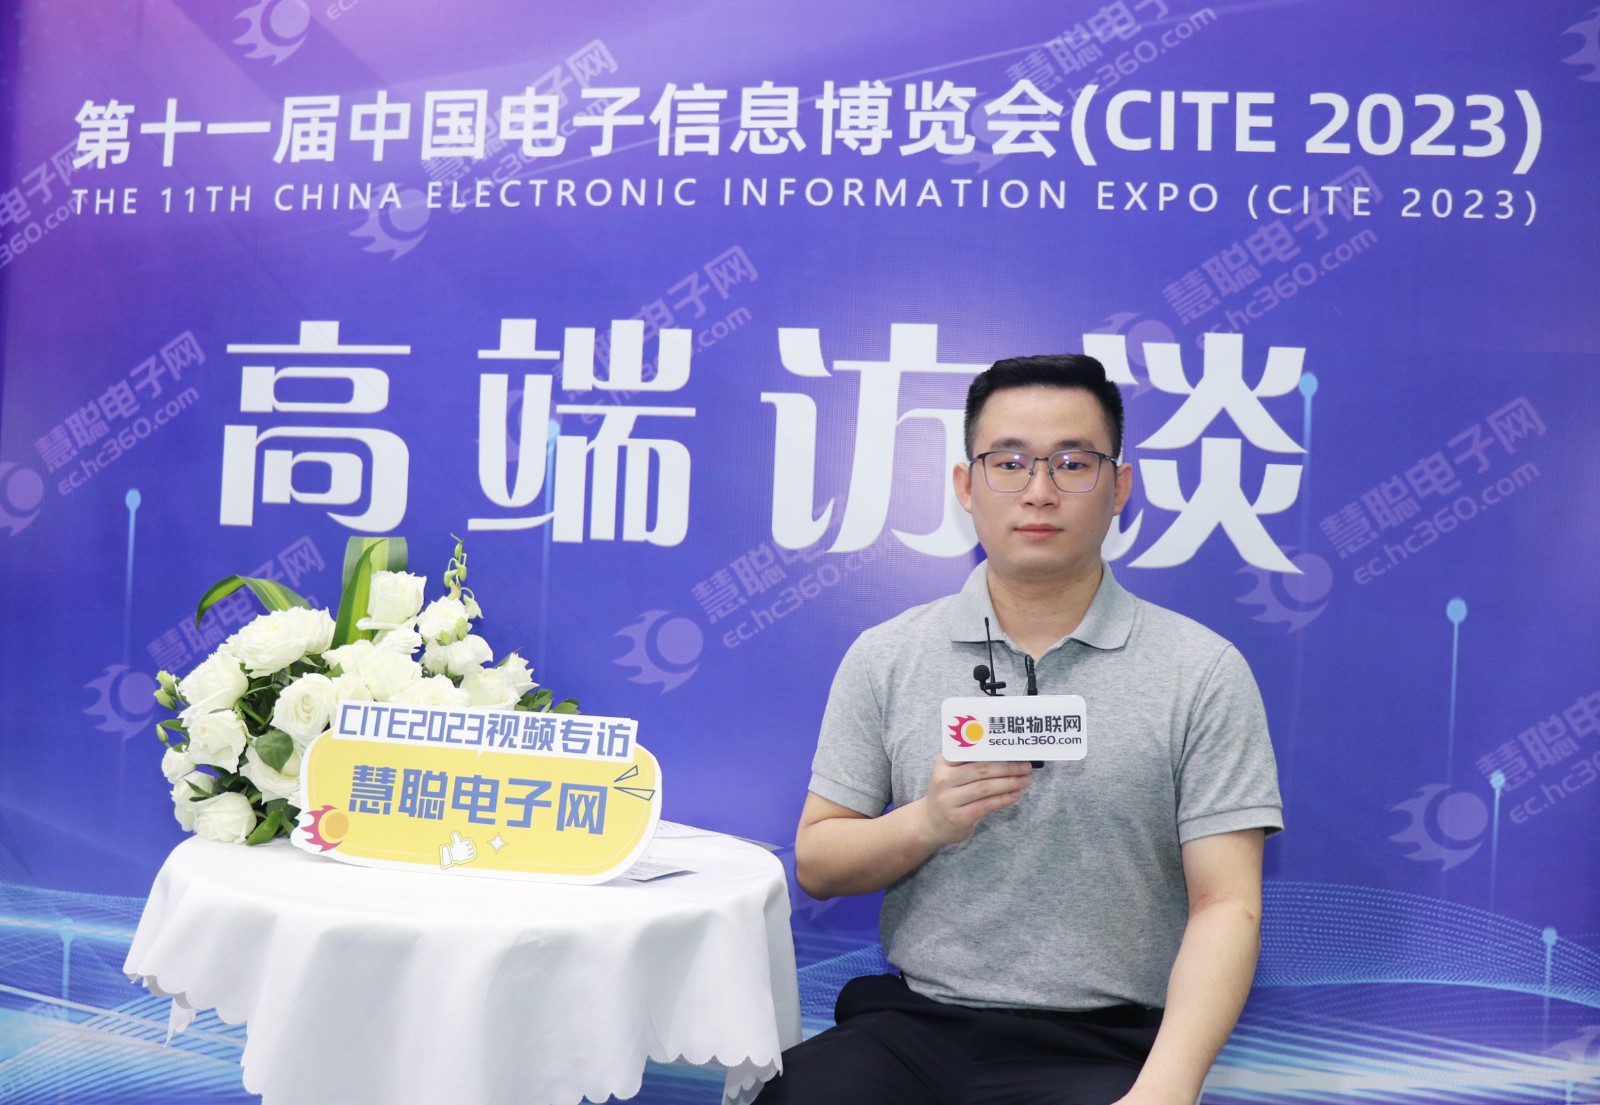 潮玩 CITE 2023之旅，《2023中国电子行业资讯大全》首发嗨翻全场！